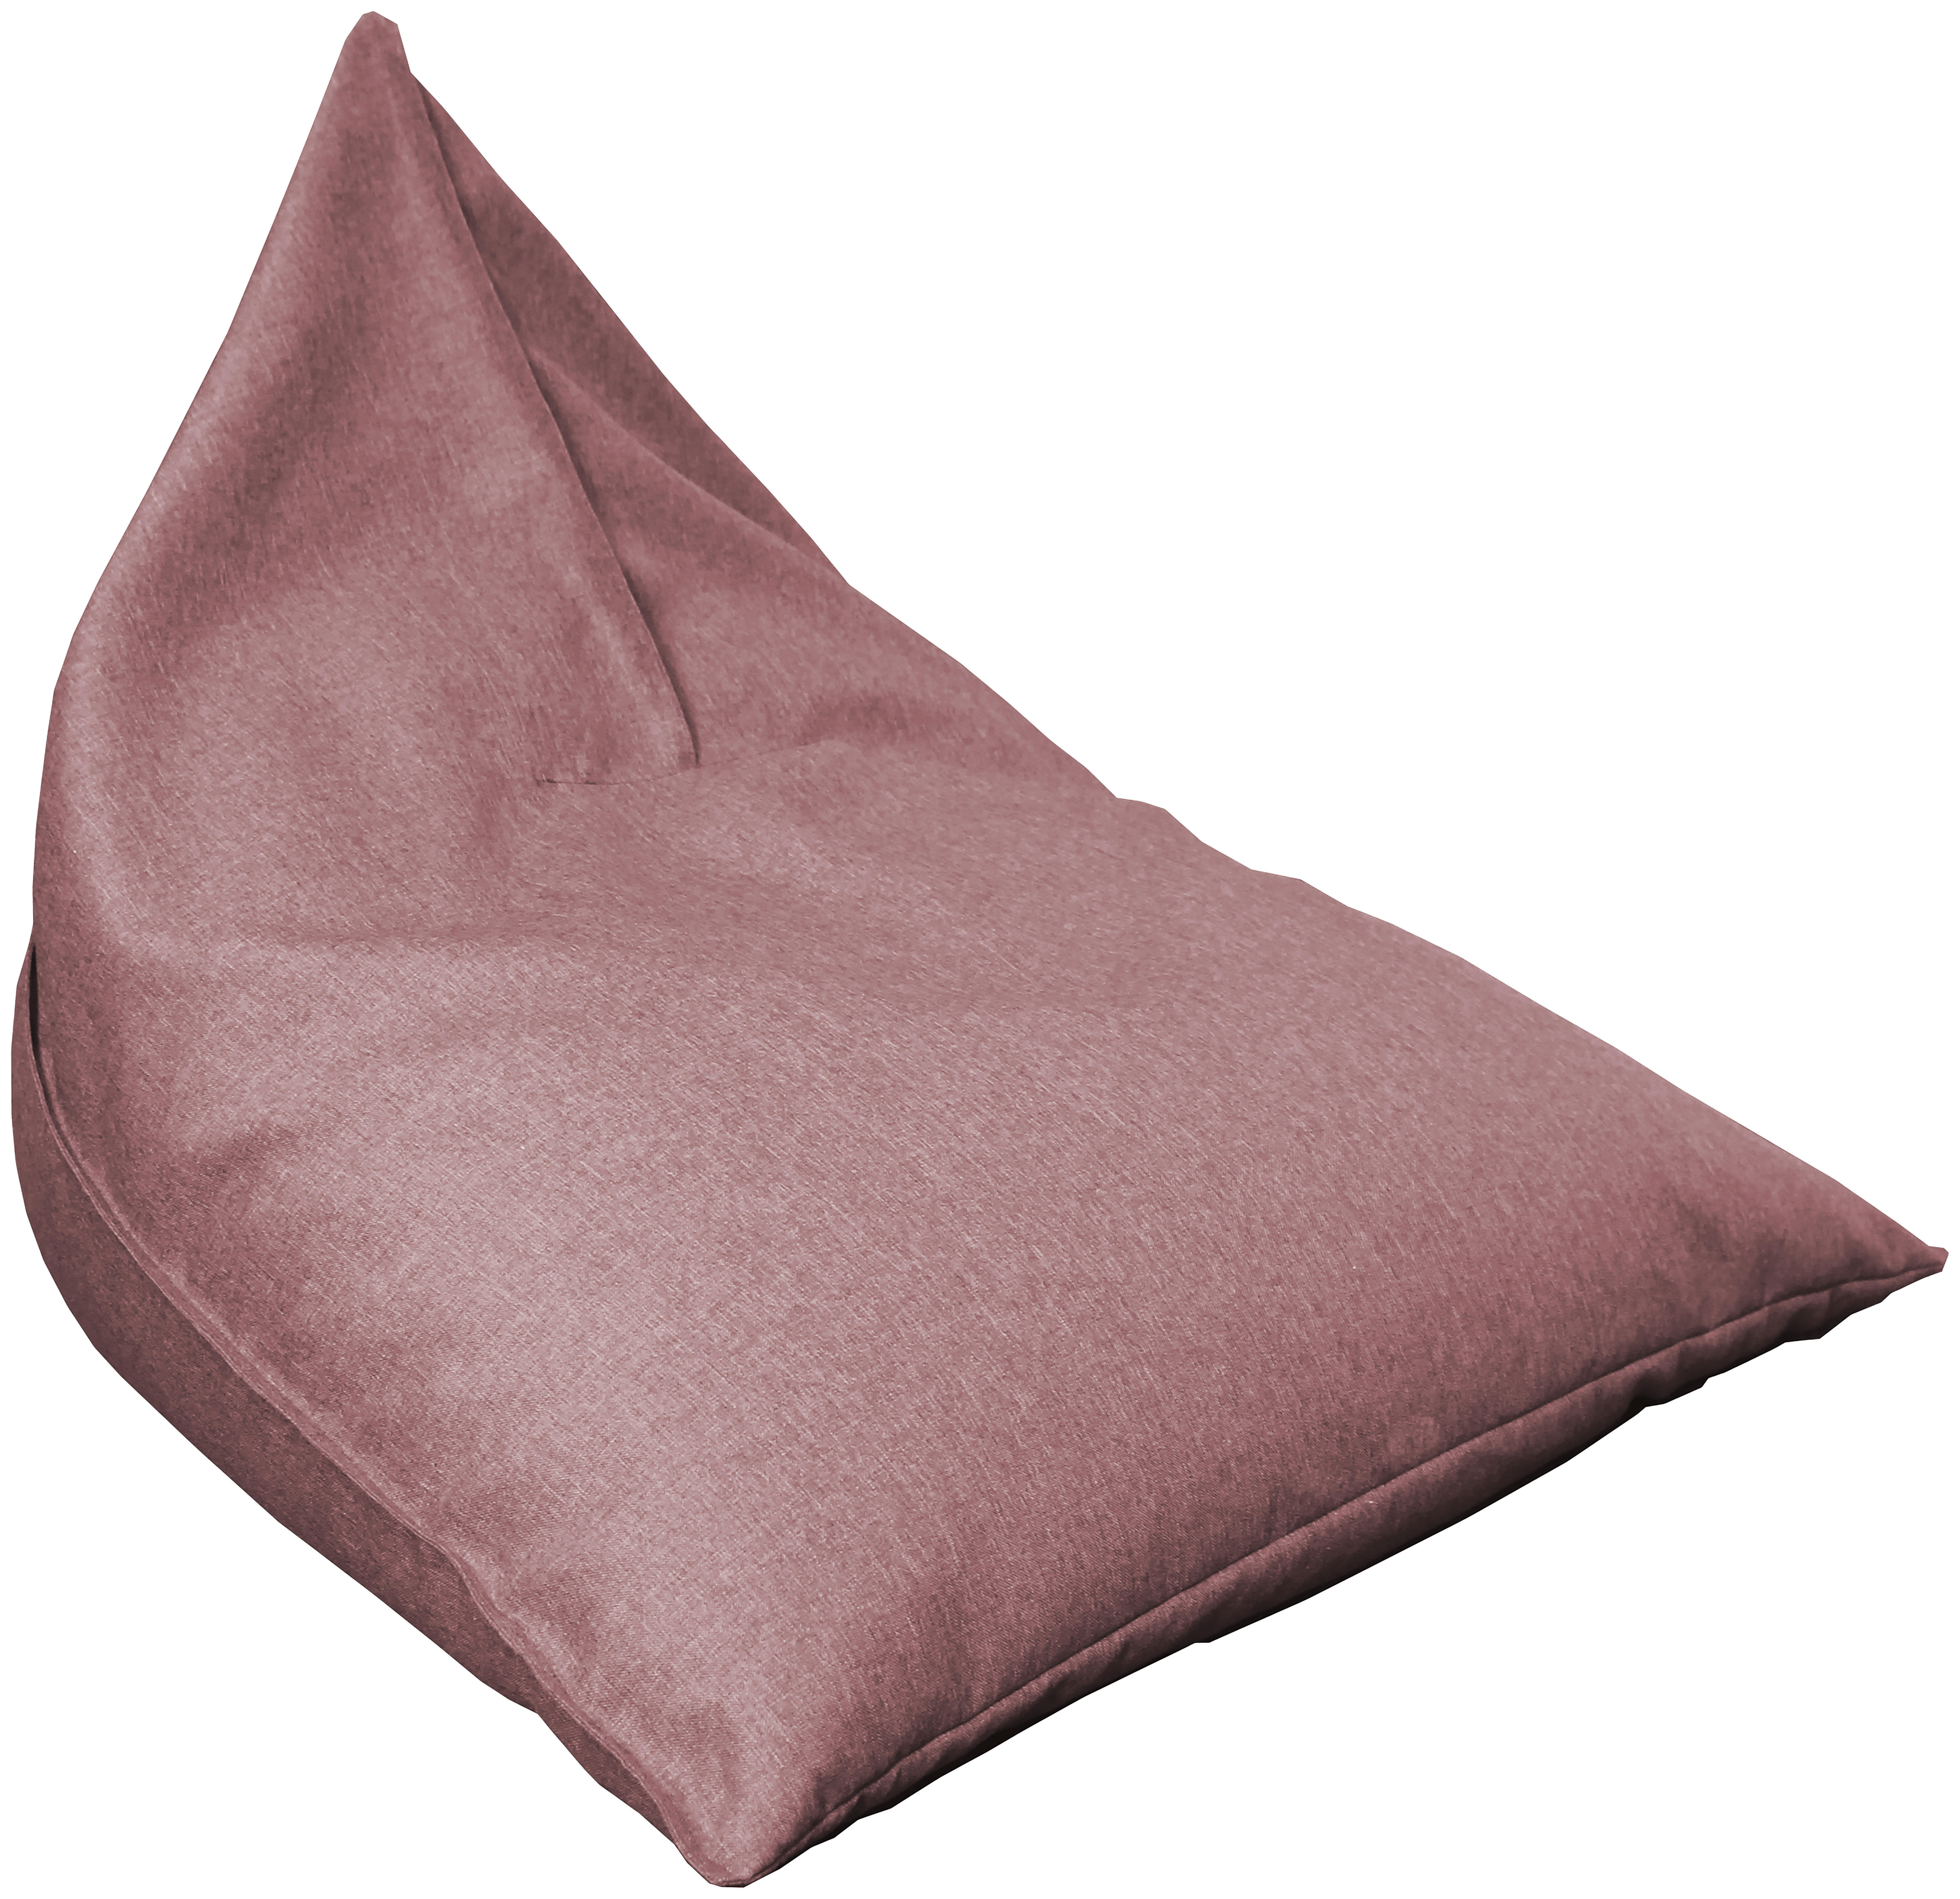 VREČA ZA SEDENJE, roza tekstil  - roza, Design, tekstil (110/85/130cm) - Carryhome